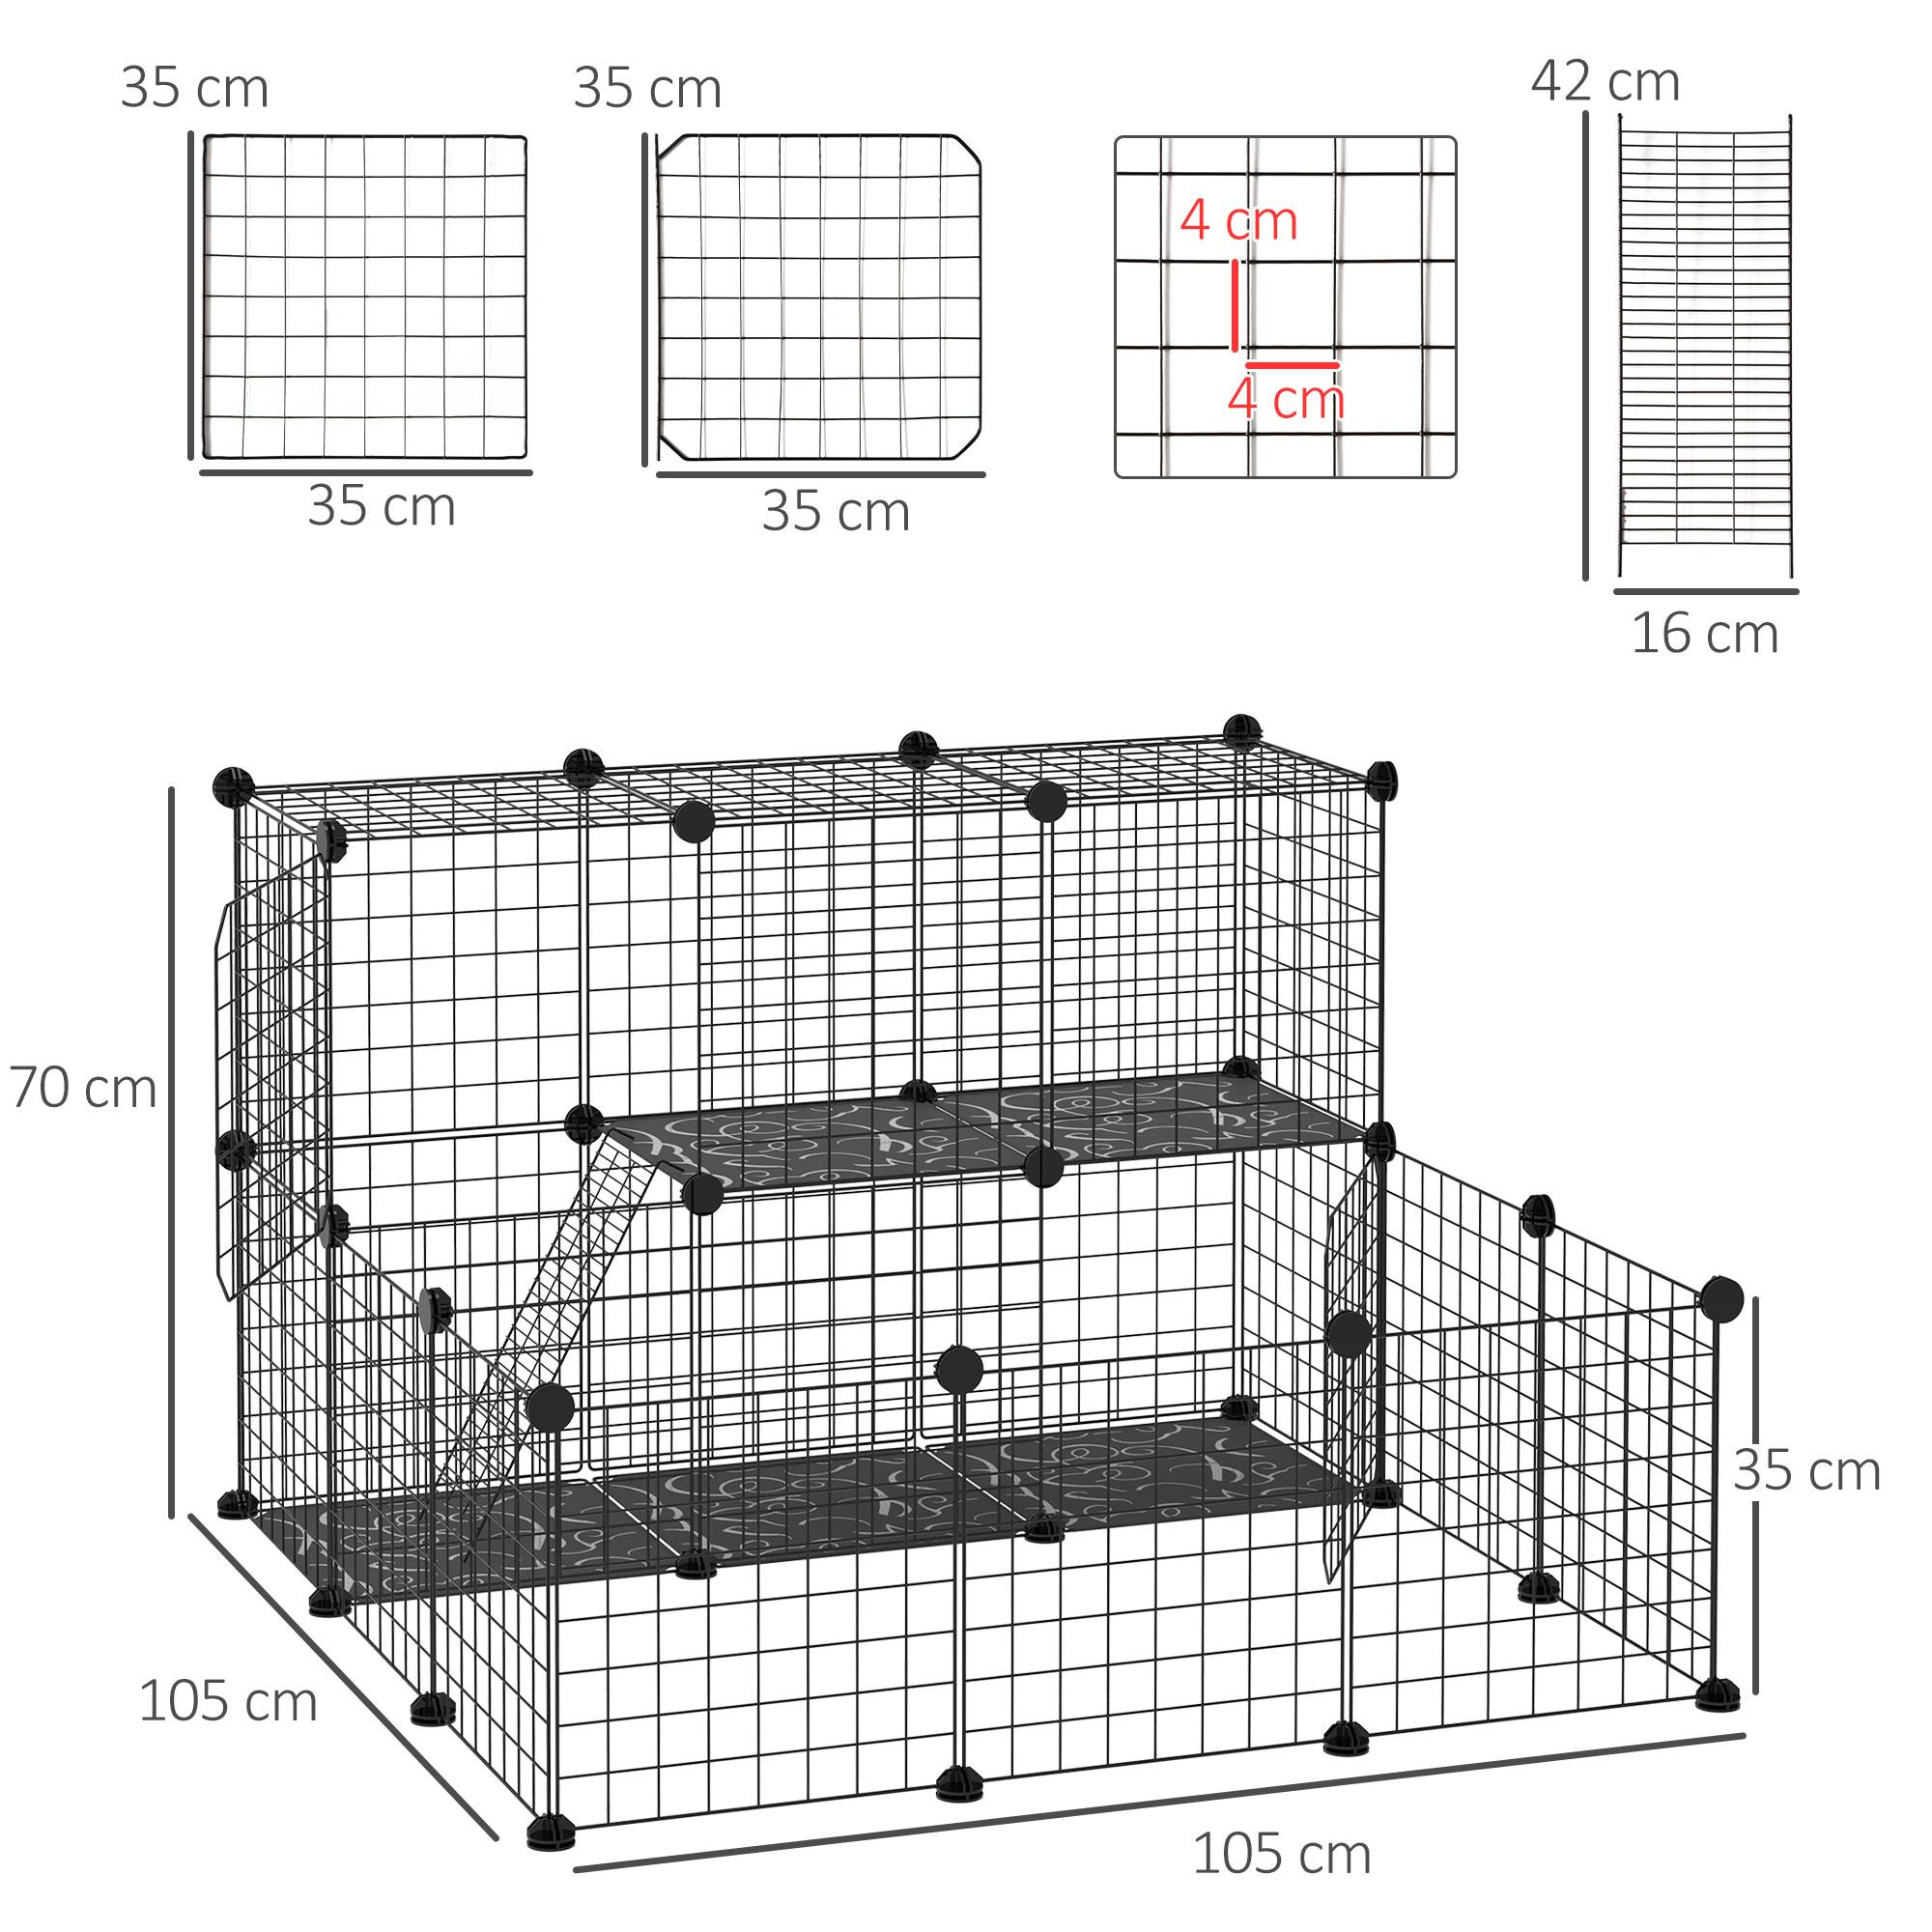 Cage parc enclos rongeurs modulable dim. L 105 x l 105 x H 70 cm 2 niveaux 2 portes rampe résine PP fil métallique noir